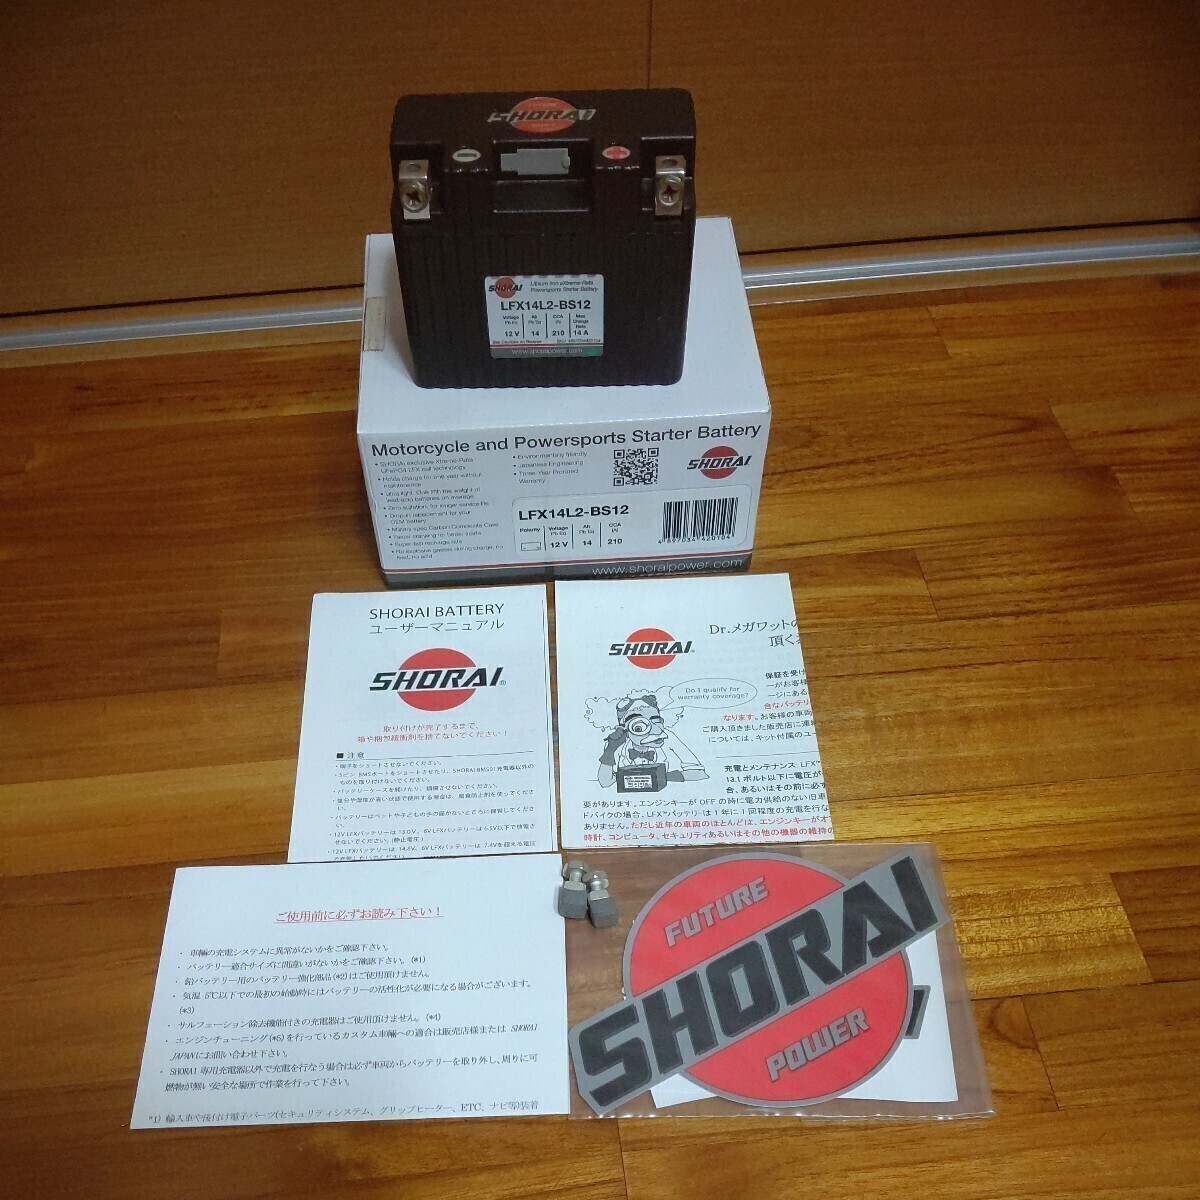 SHORAI LFX14-L2BS12shoulai battery show lai battery lithium ion battery SHORAI battery junk shoulai